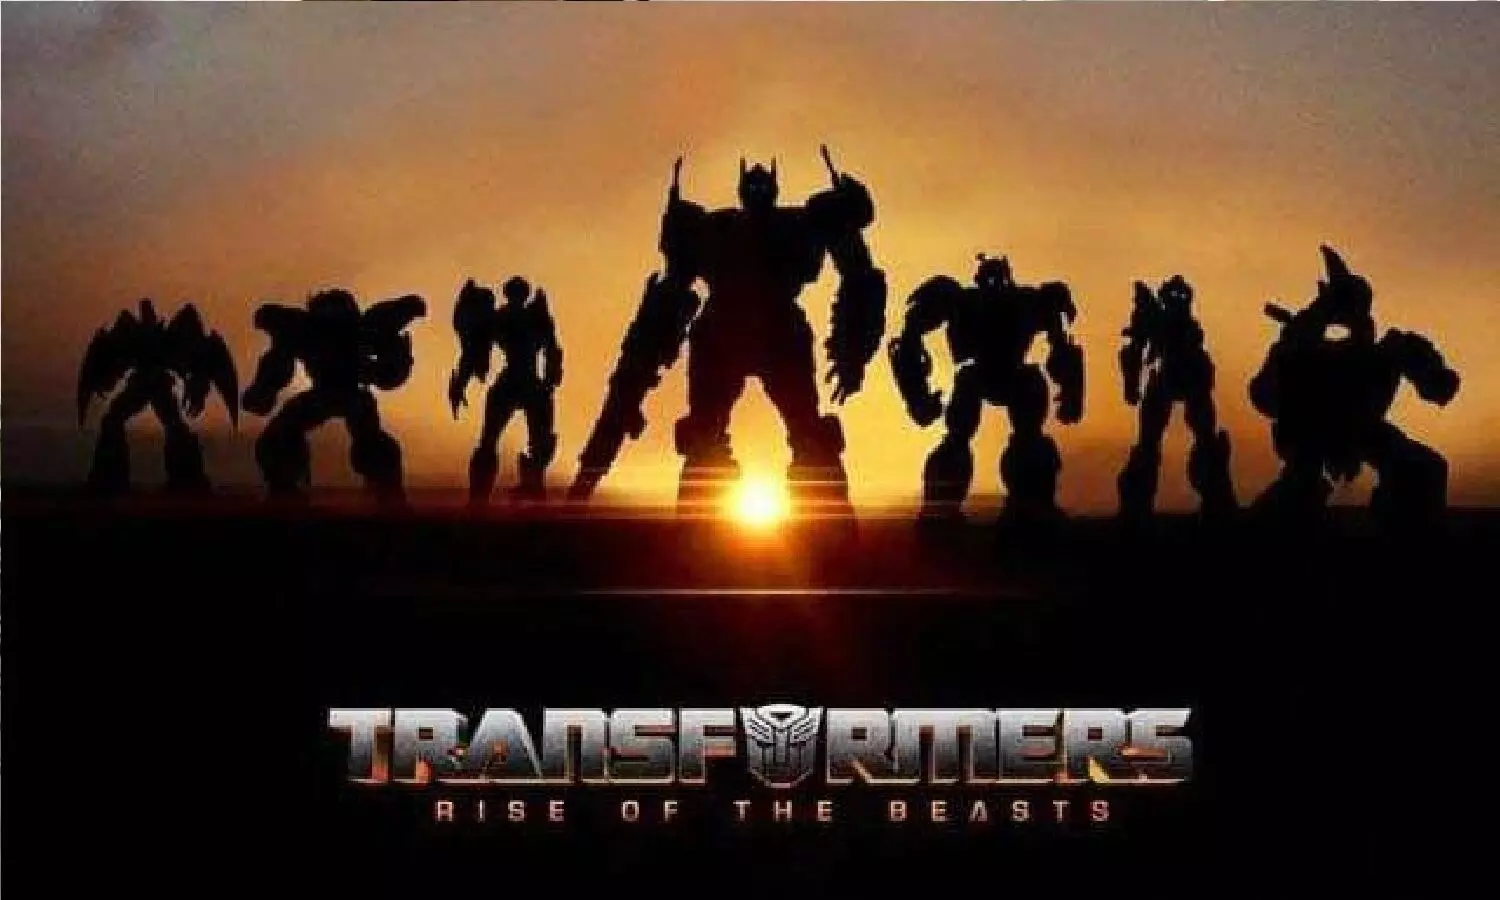 Transformers Film Sequence: ट्रांसफॉर्मर्स राइज़ ऑफ़ द बीस्ट देखने के लिए पहले पिछले पार्ट के सीक्वेंस तो जान लो